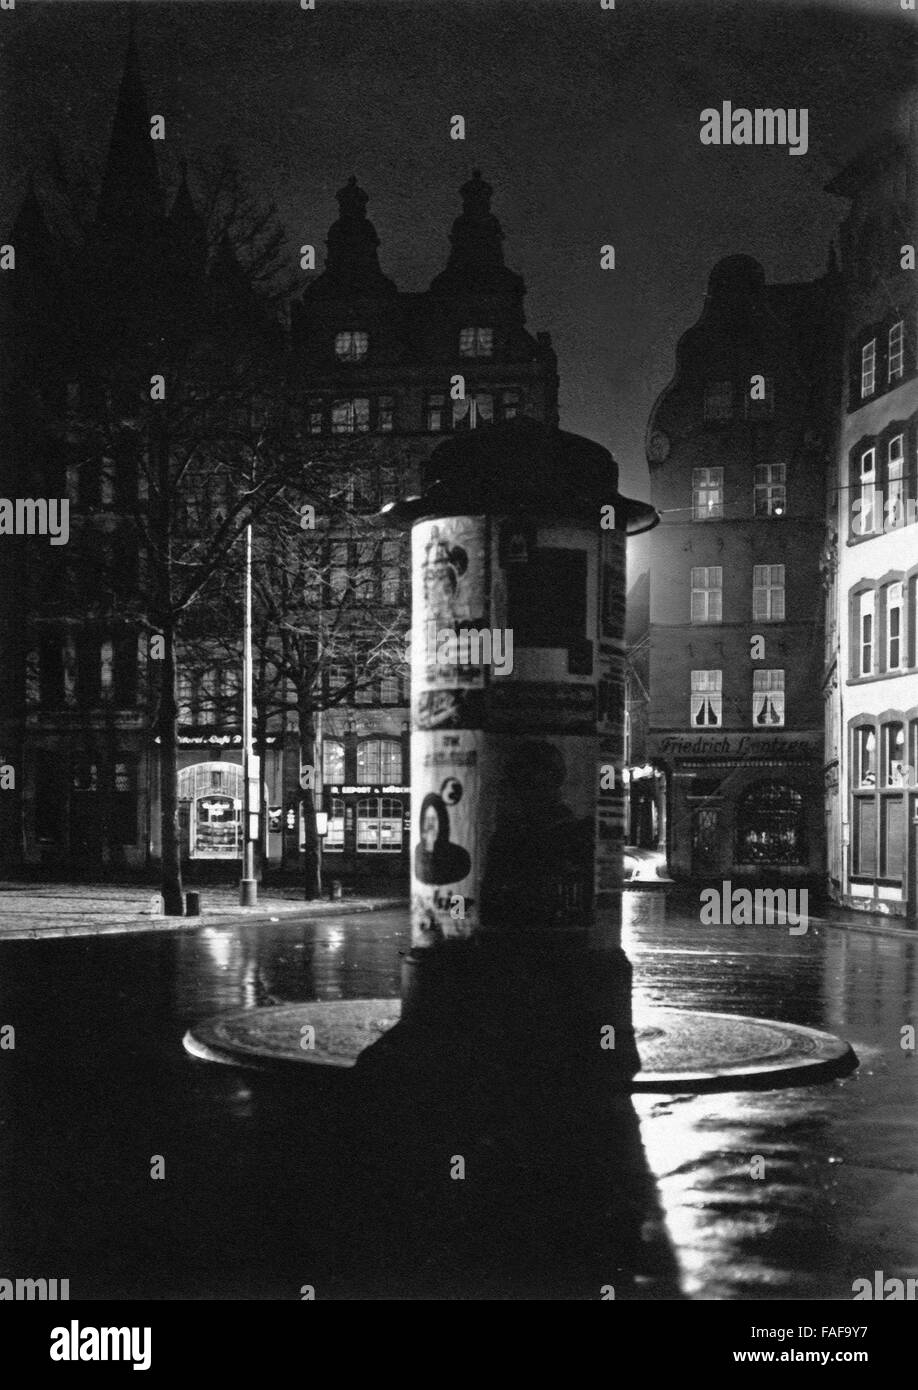 Eine Litfaßsäule auf dem Alter Markt in Köln bei Nacht, Deutschland 1920er Jahre. An advertising column on the Alter Markt market in the old city of Cologne, Germany 1920s. Stock Photo